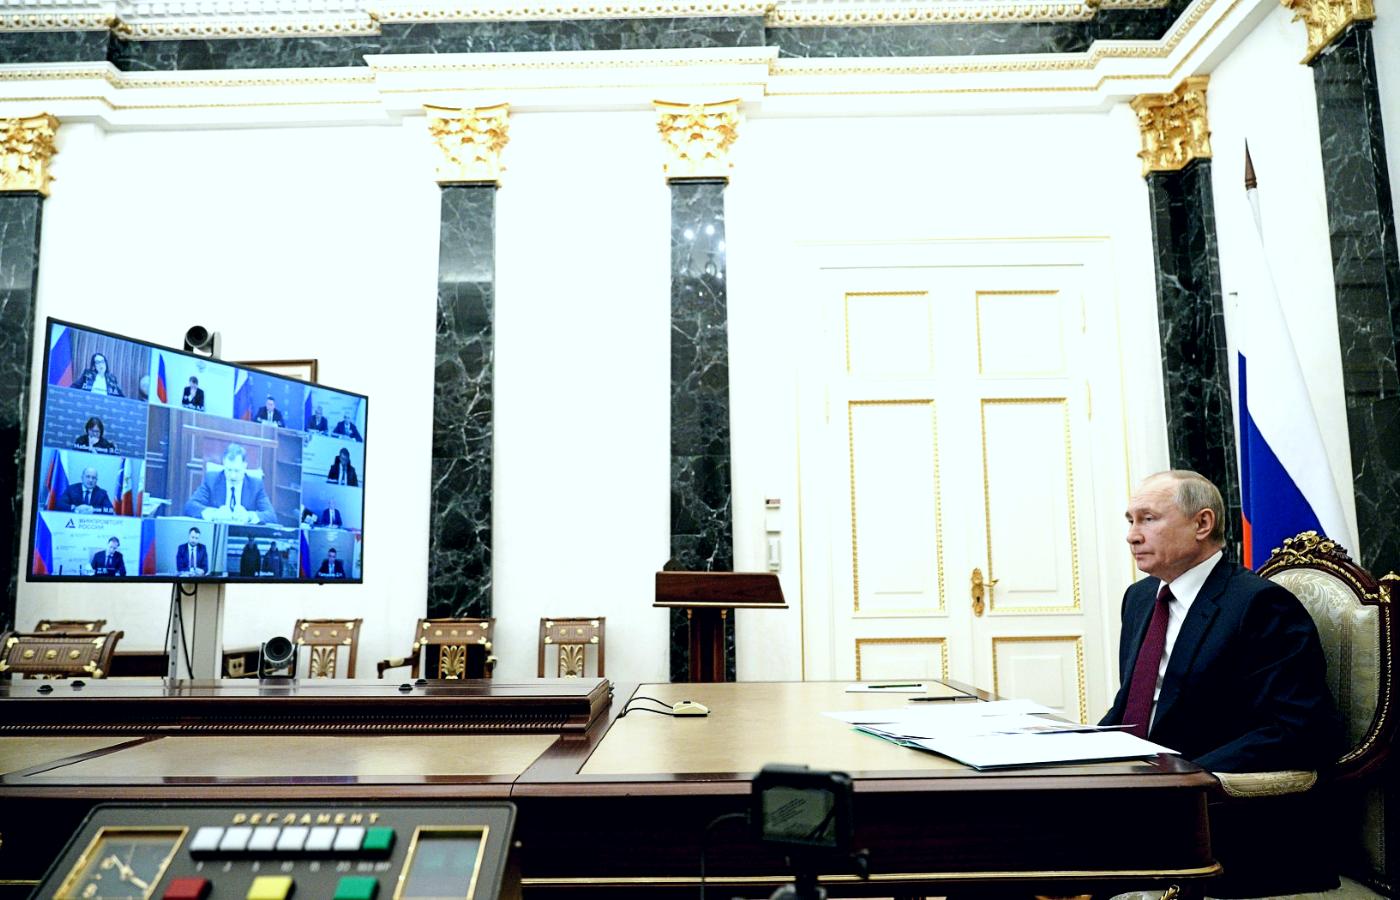 Wielki ekran, lekko zachrypnięty Władimir Putin i długa checklista czynowników do odpytania.